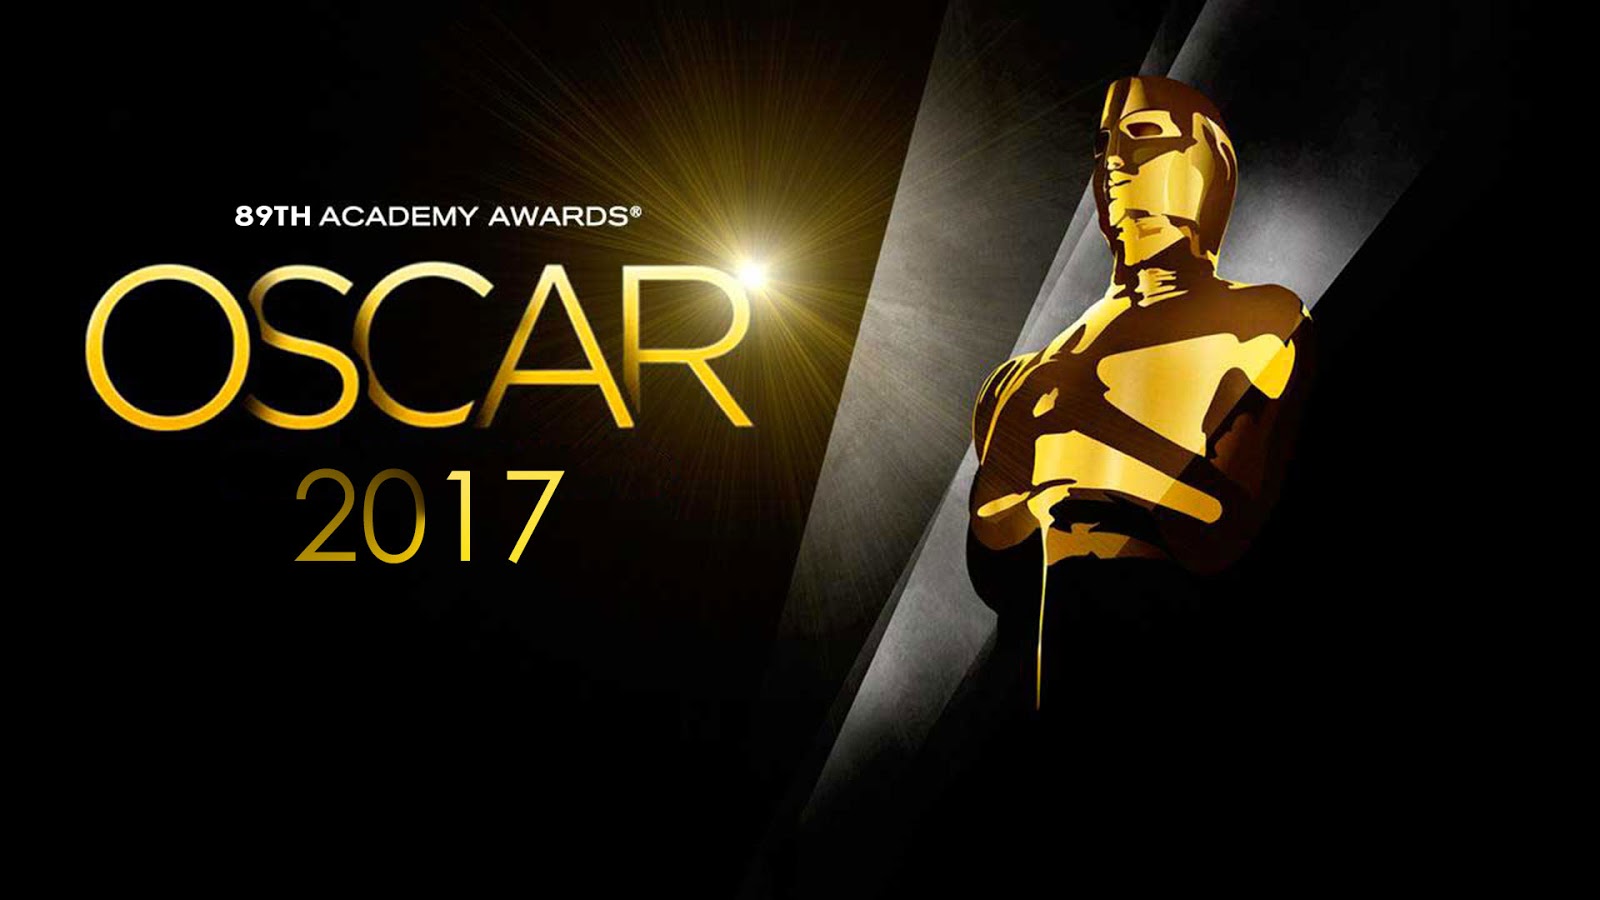 The Oscars, the 89th Academy Awards, will air tonight beginning at 8:30pm EST. | The Oscars, the 89th Academy Awards, will air tonight beginning at 8:30pm EST.